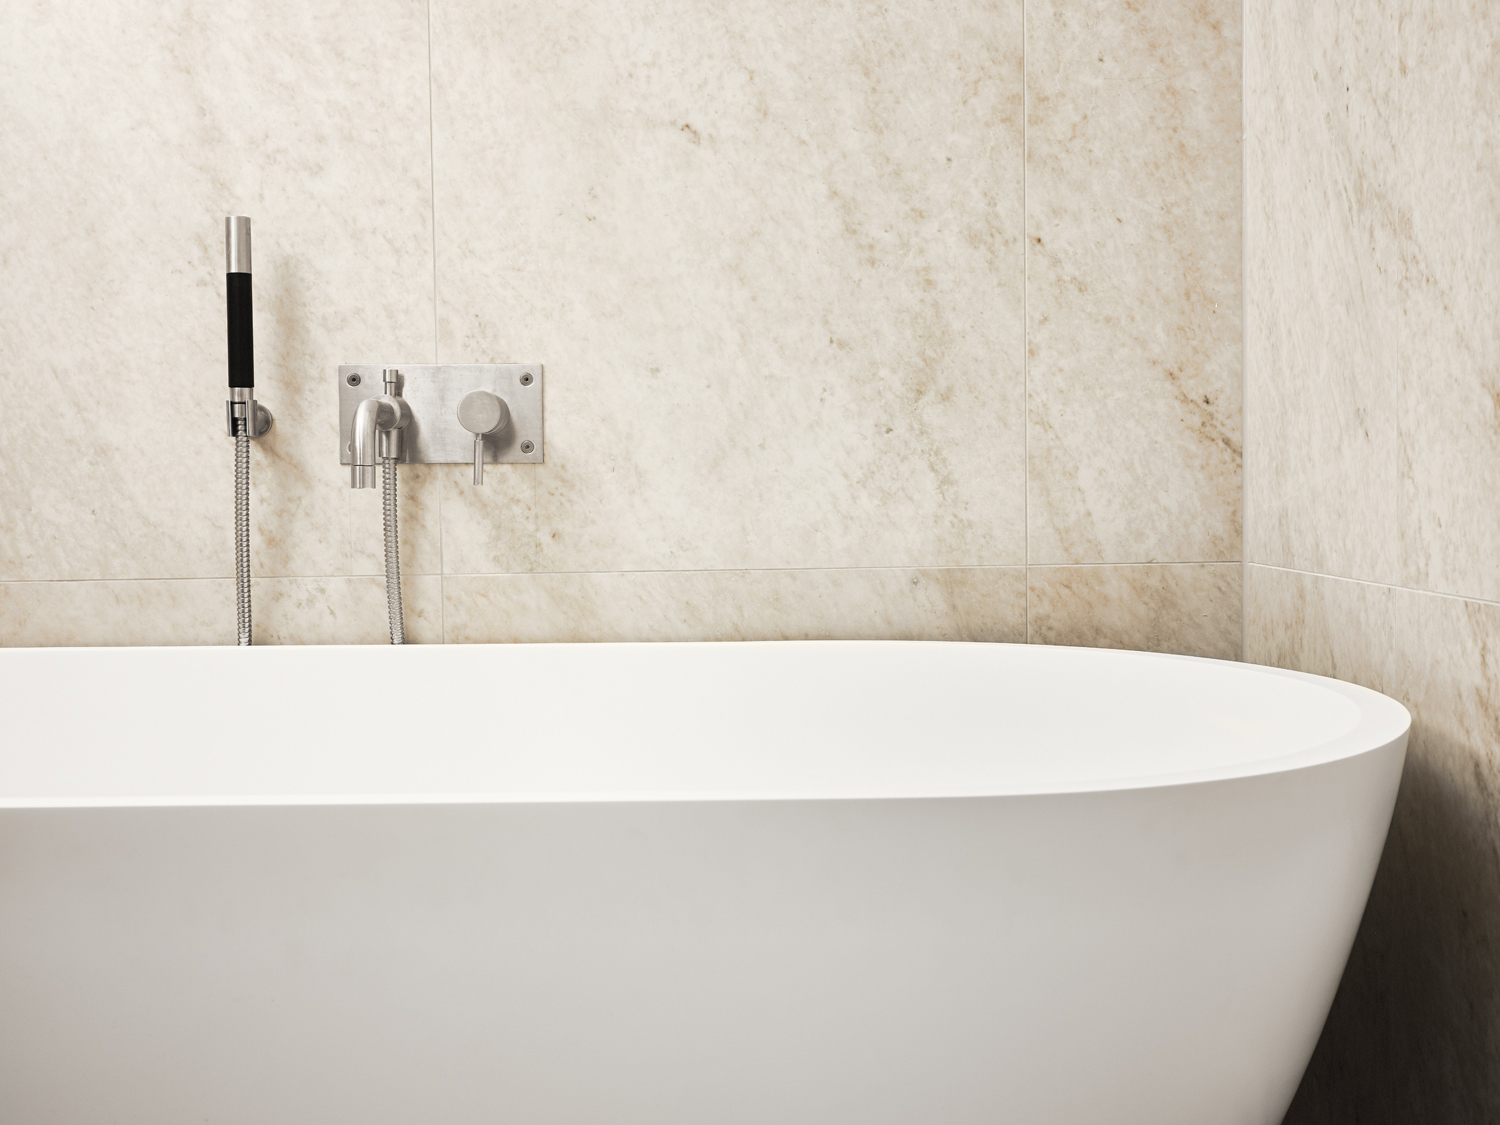 Varme toner i marmorfliser fra Bricmate på badet. Frittstående badekar.